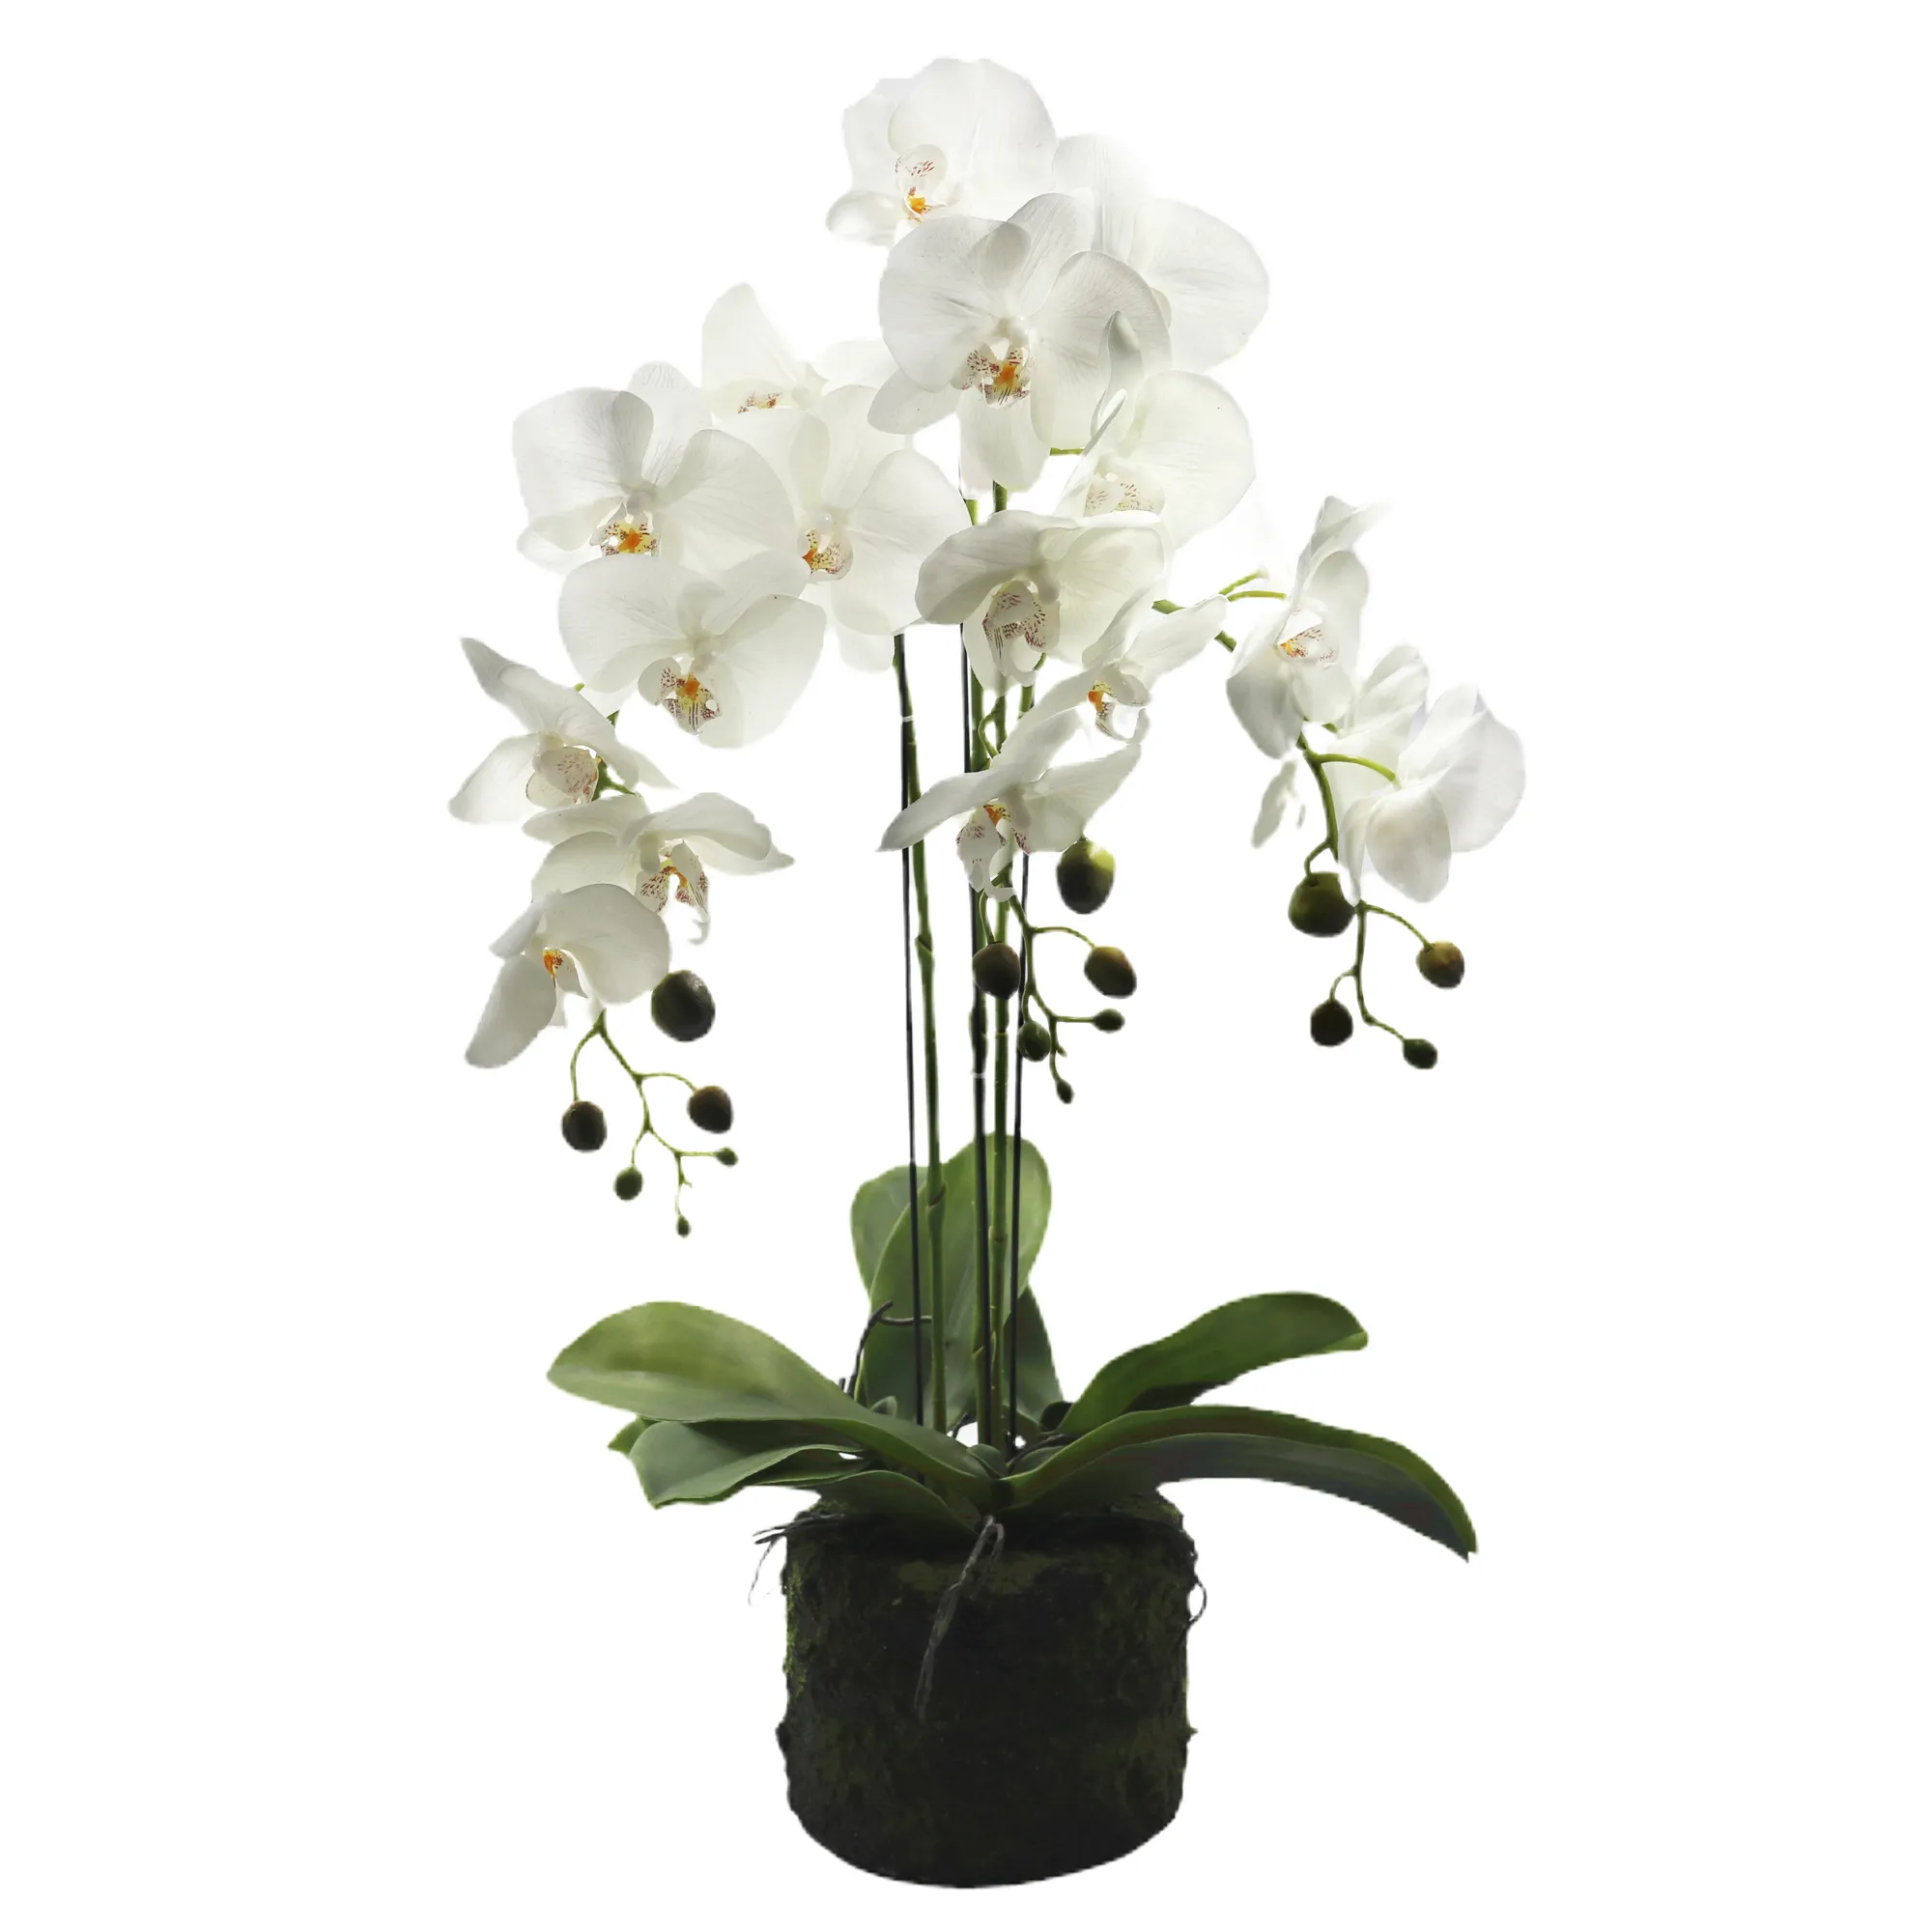 Горшок орхидеи с 3 ветвями reach touch, фалаенопсис, горшок для дома, декоративные белые искусственные орхидеи, цветы орхидеи